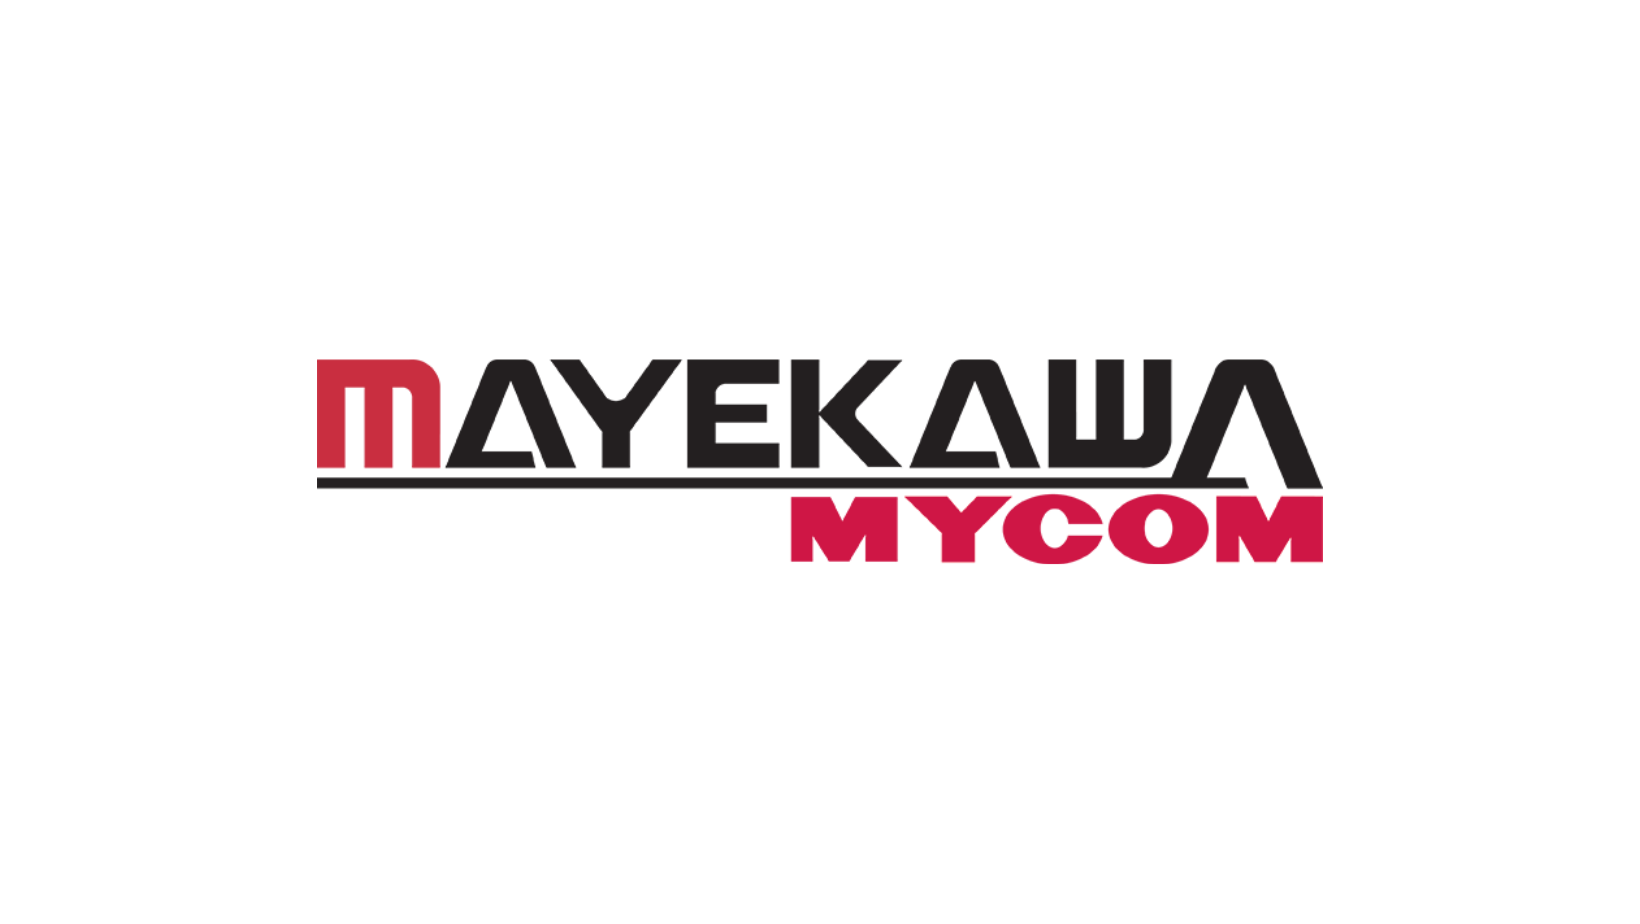 Logo Mayekawa